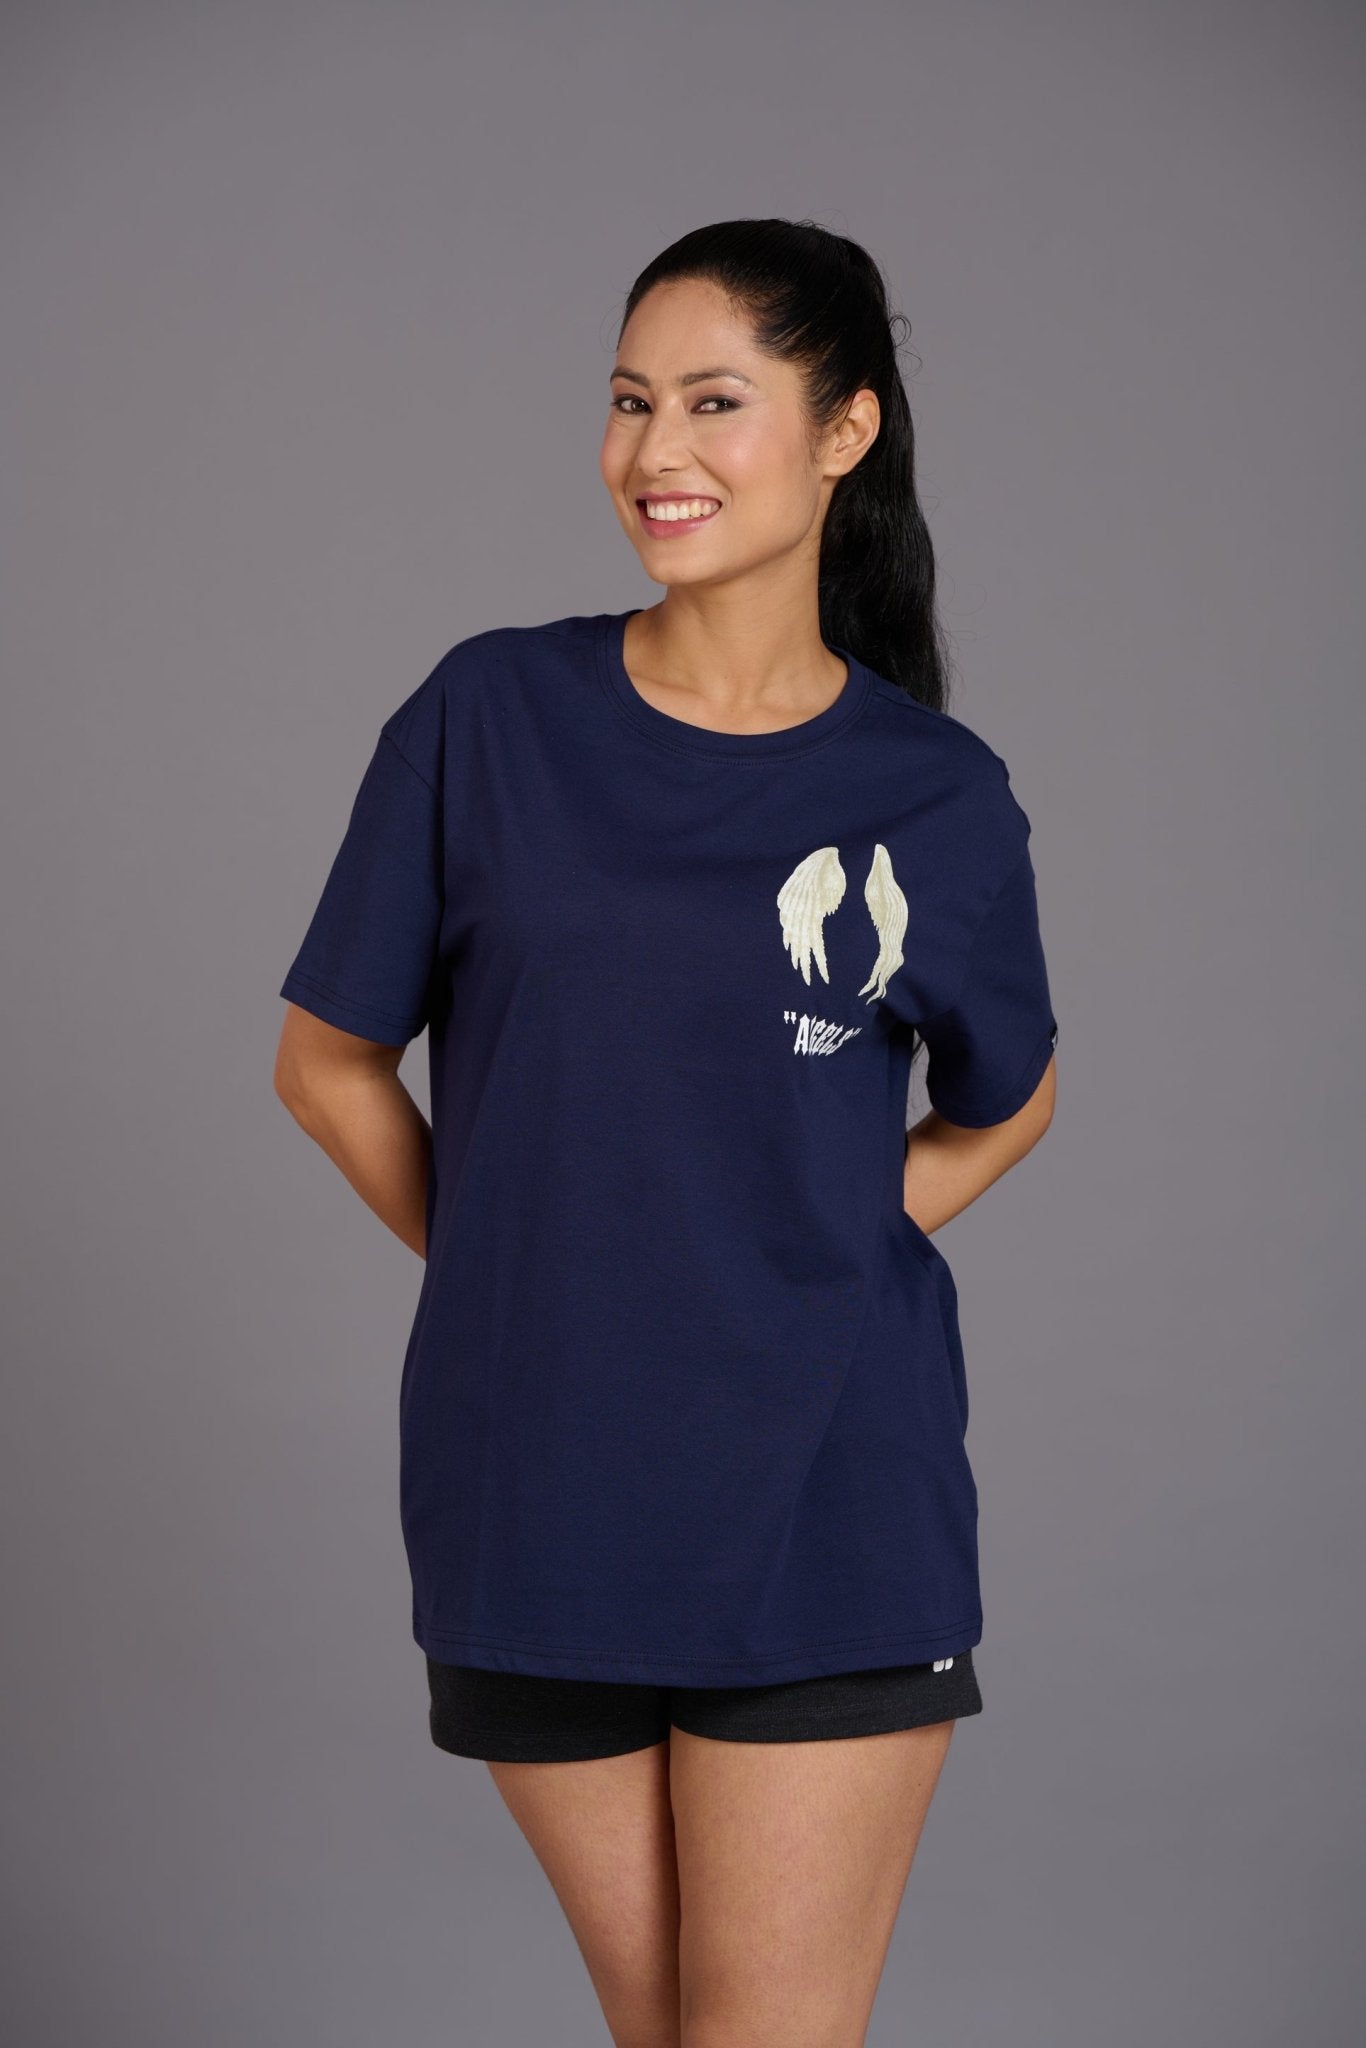 Blue Angel Wings Printed Oversized T-Shirt for Women - Go Devil